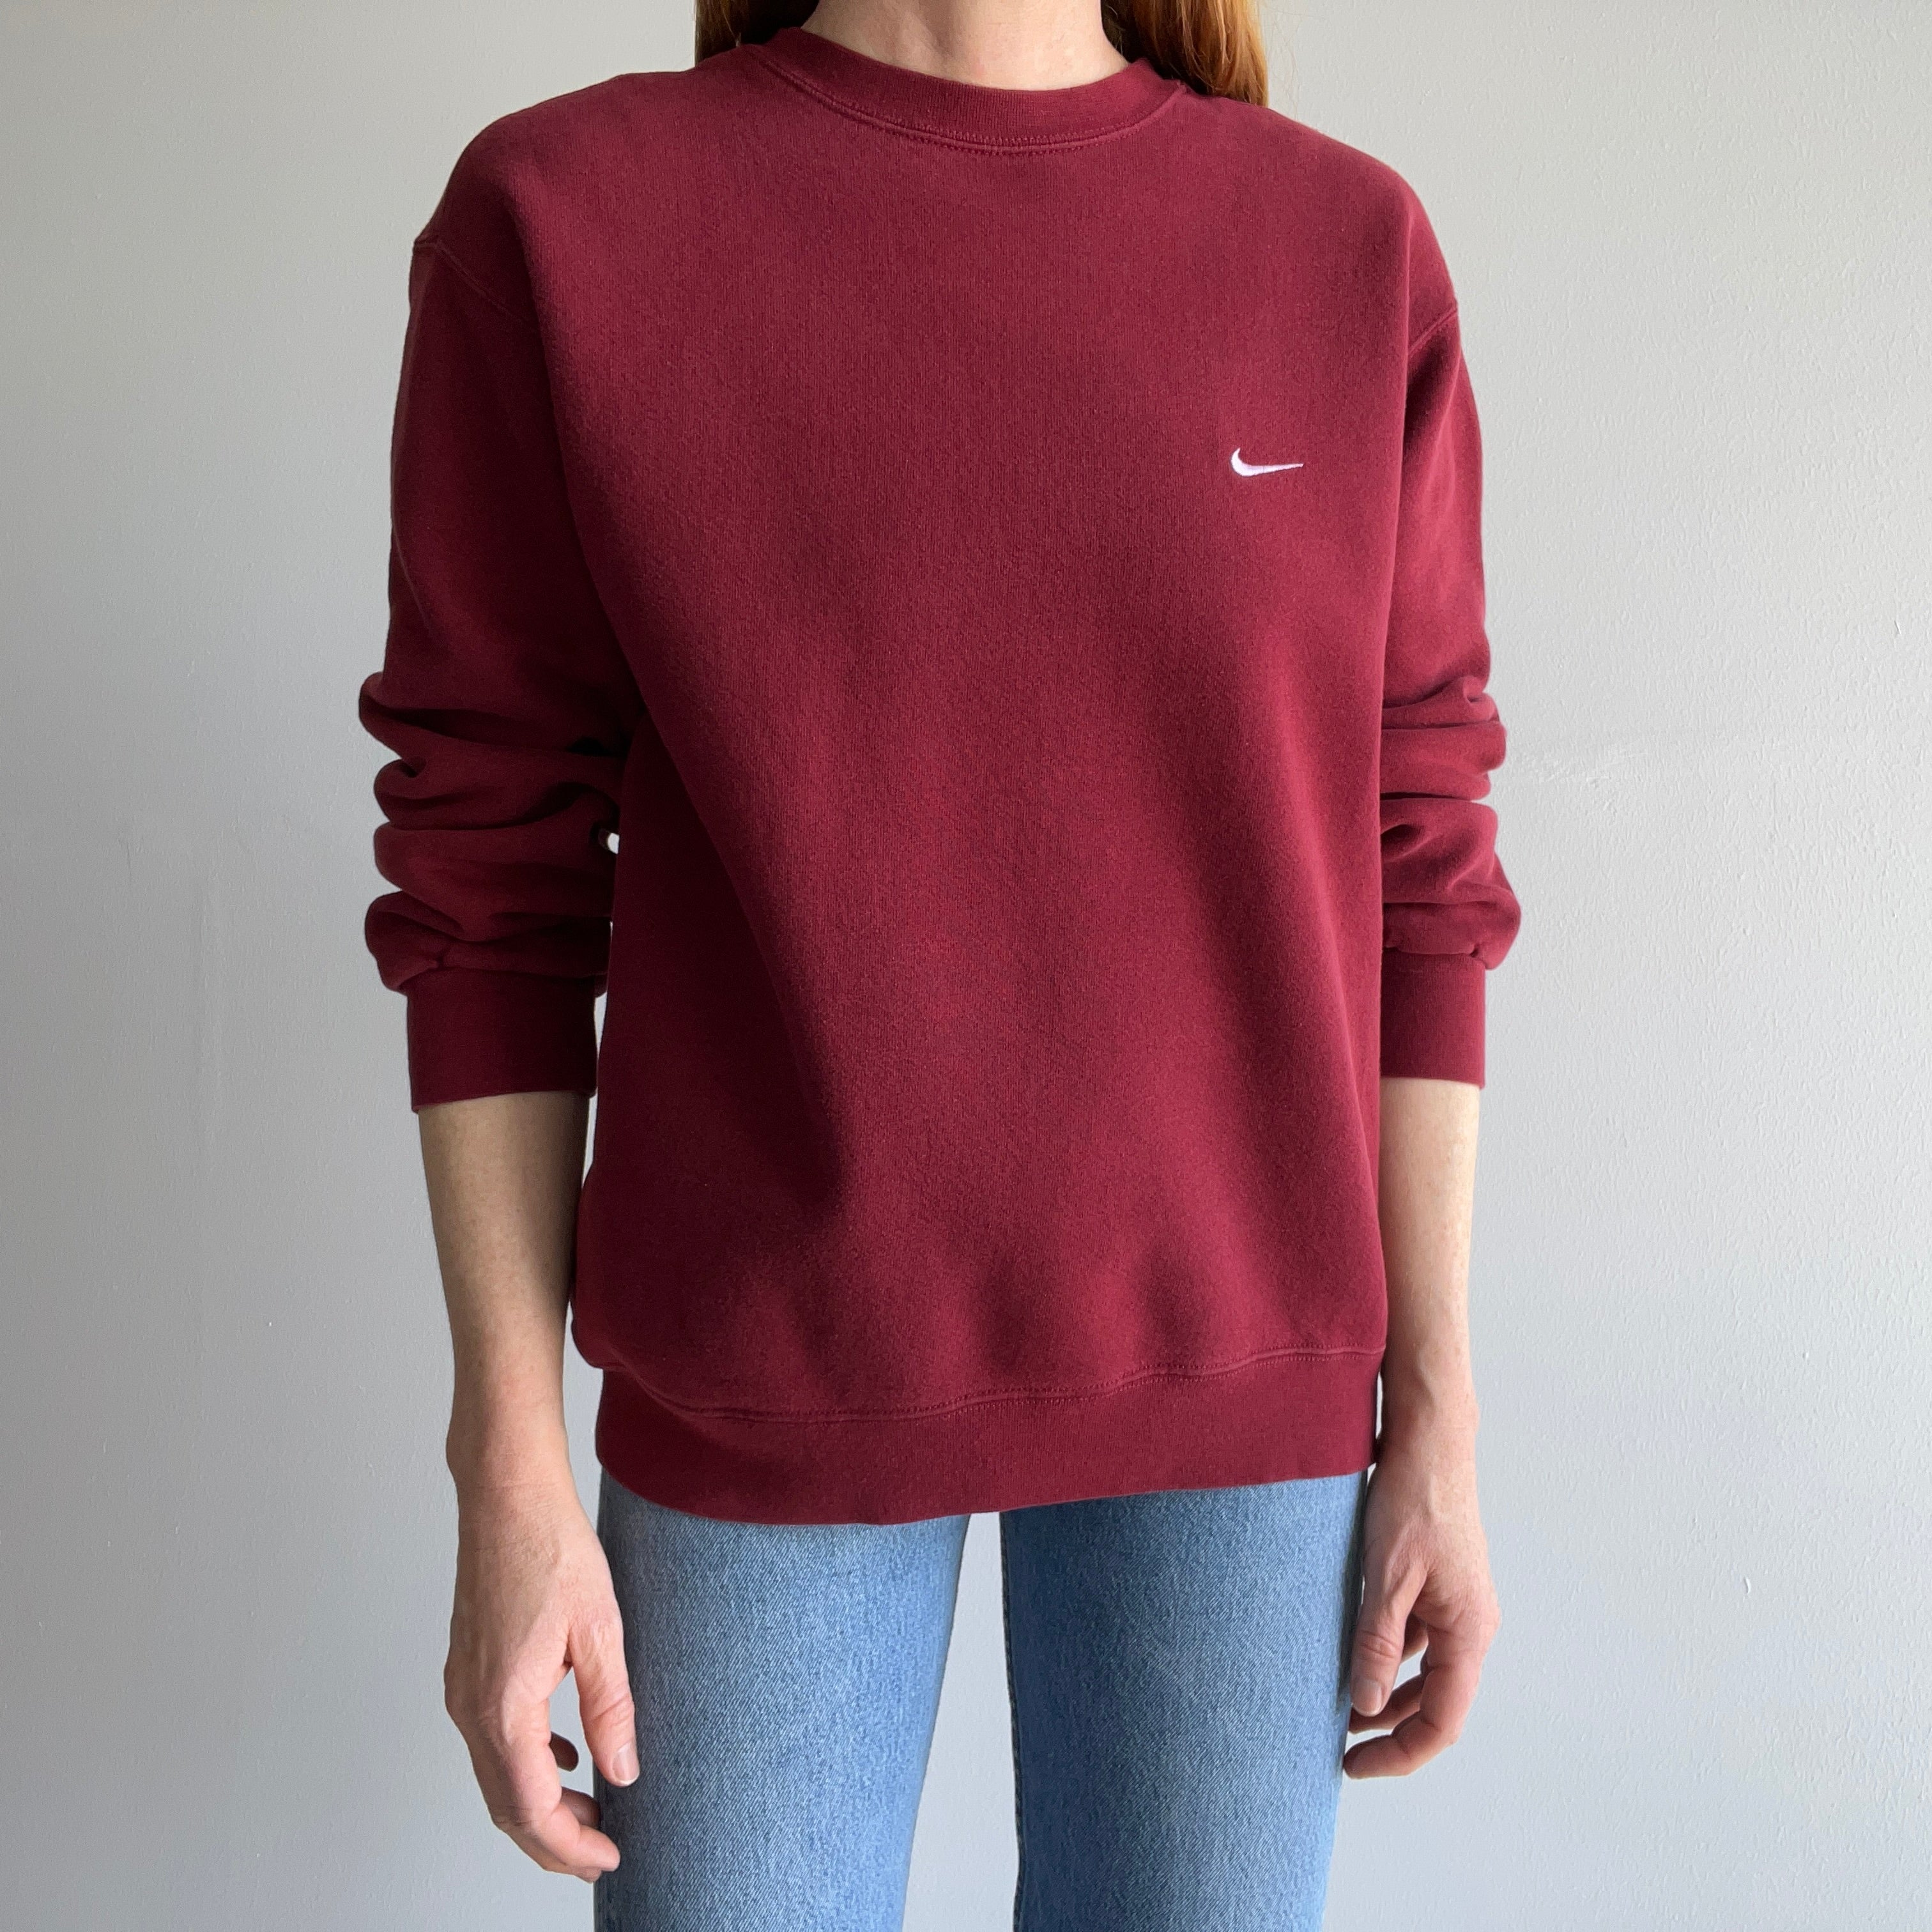 1990s Burgundy Nike Sweatshirt - Medium Weight